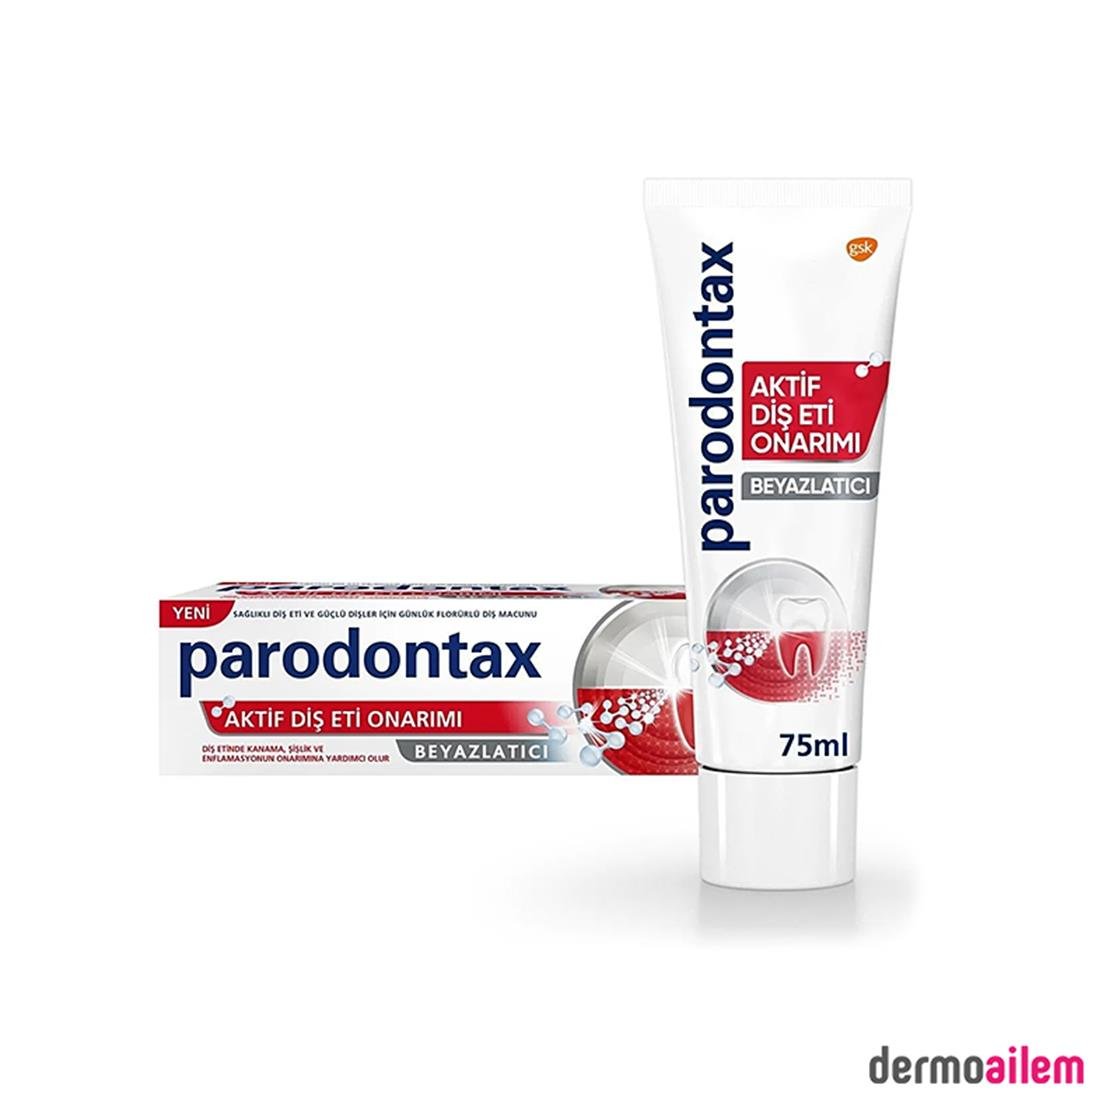 Parodontax Diş Macunu Aktif Diş Eti Onarımı Beyazlatıcı 75 ml Ürünleri  Fiyatları | Dermoailem